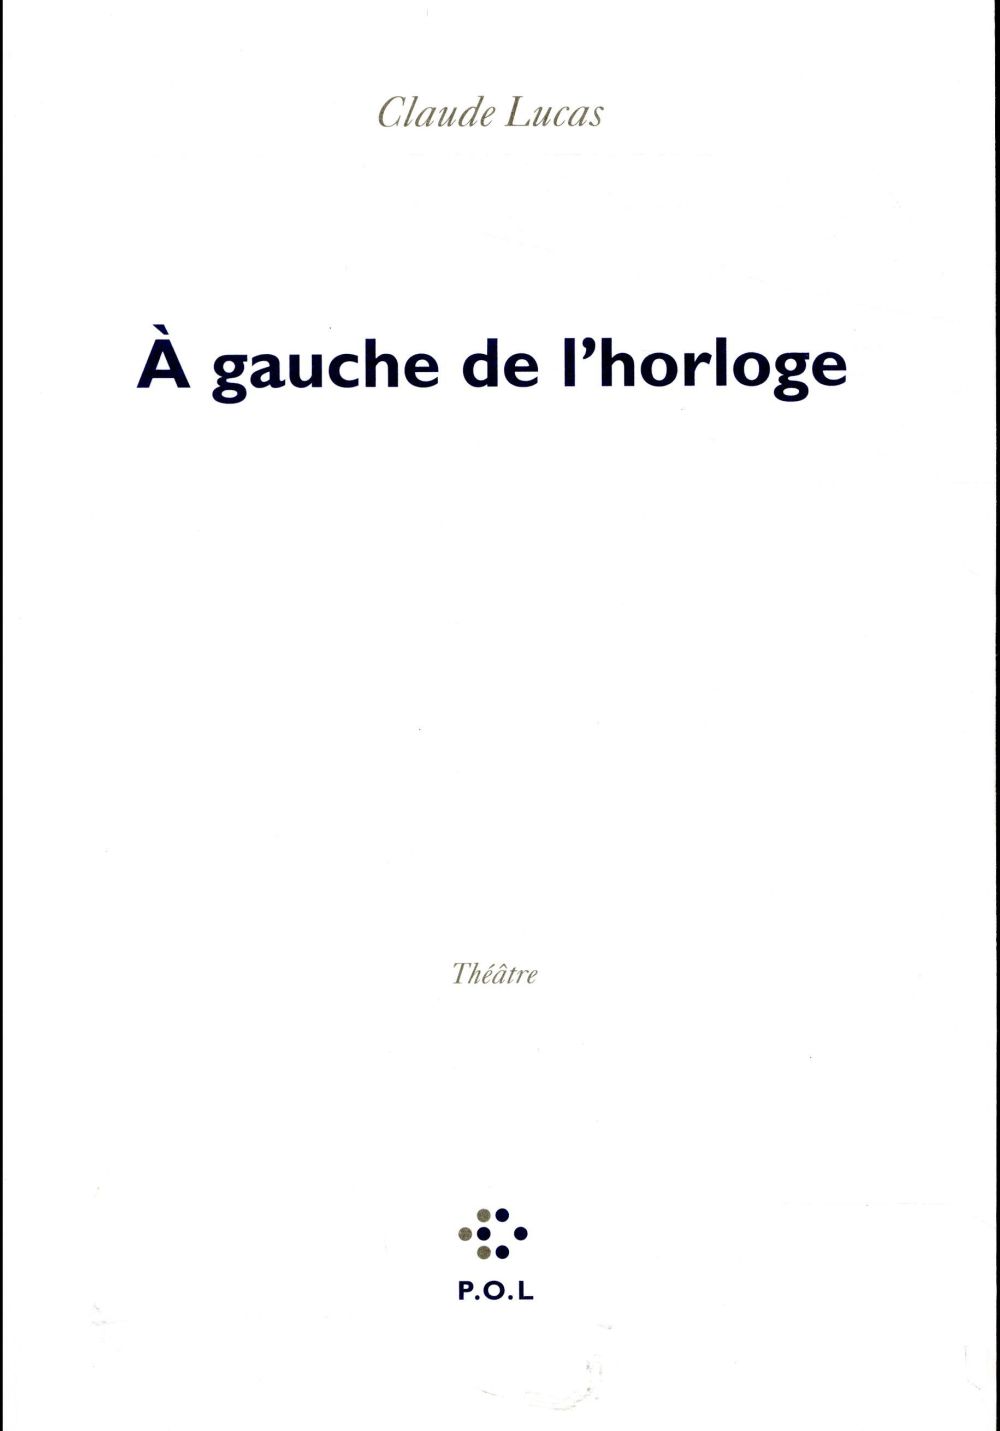 A GAUCHE DE L'HORLOGE